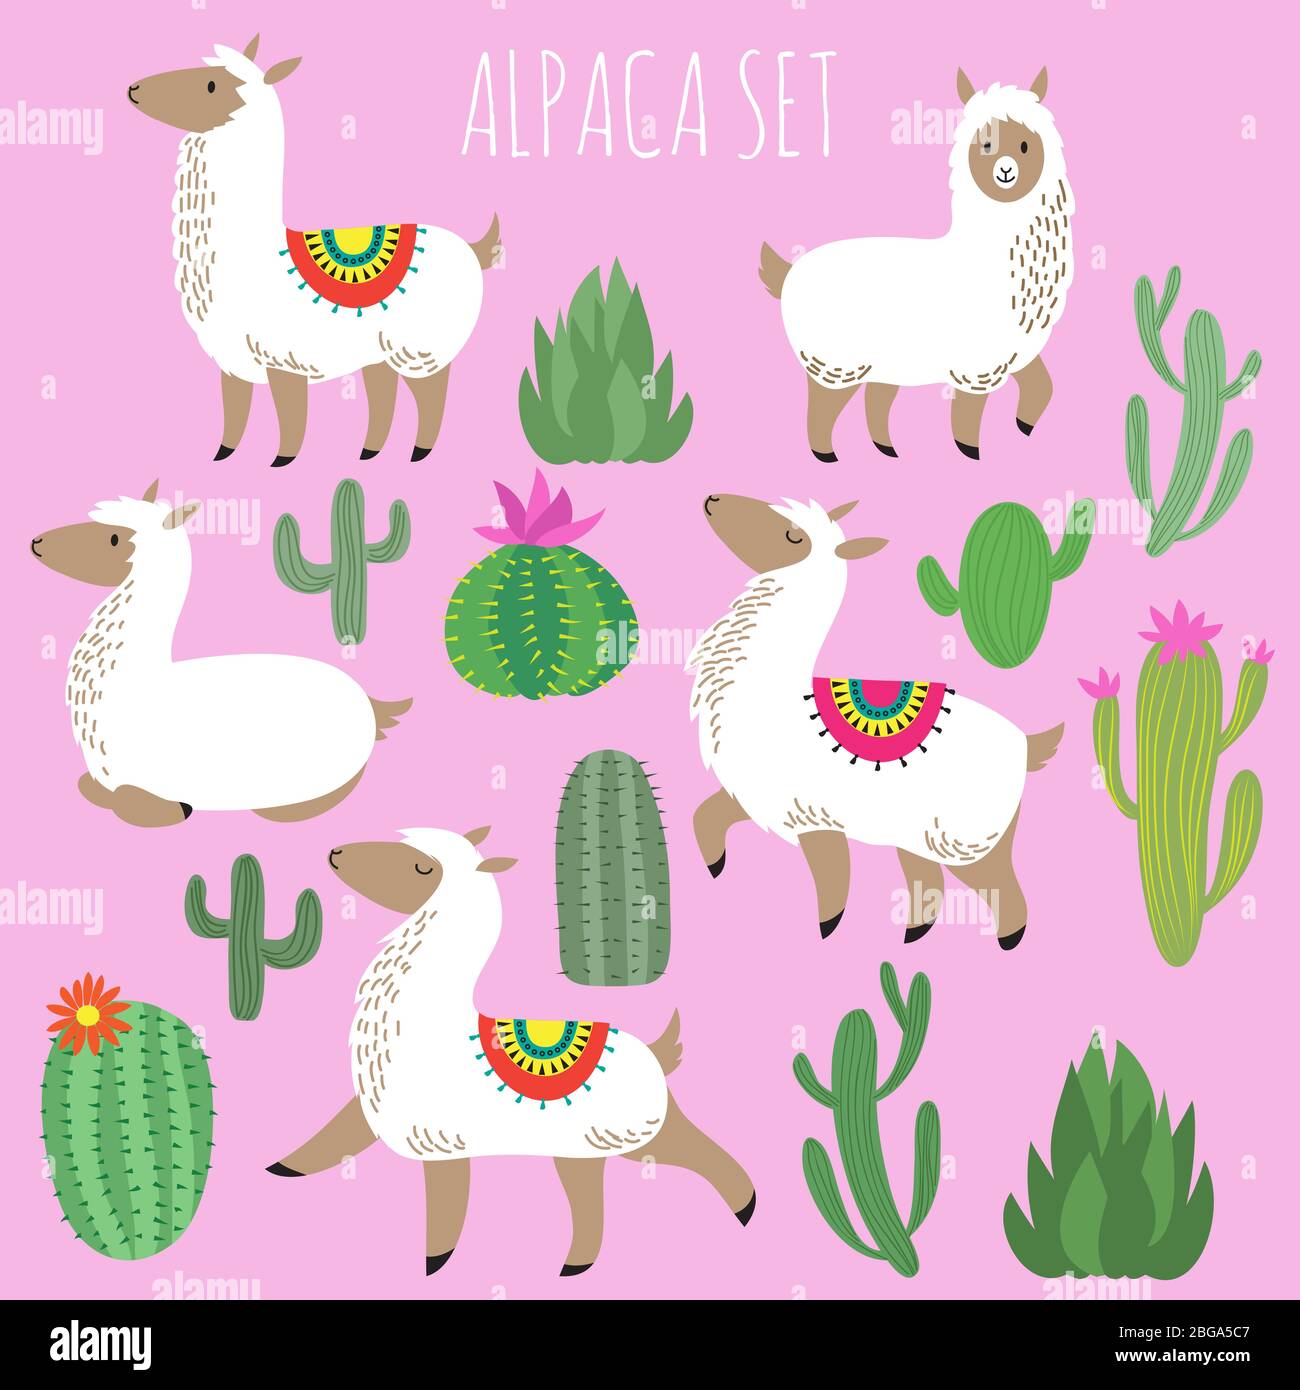 Juego de vectores de alpacas blancas mexicanas y plantas desérticas. Cartoon lama animal y cactus de la naturaleza con ilustración de flores Ilustración del Vector